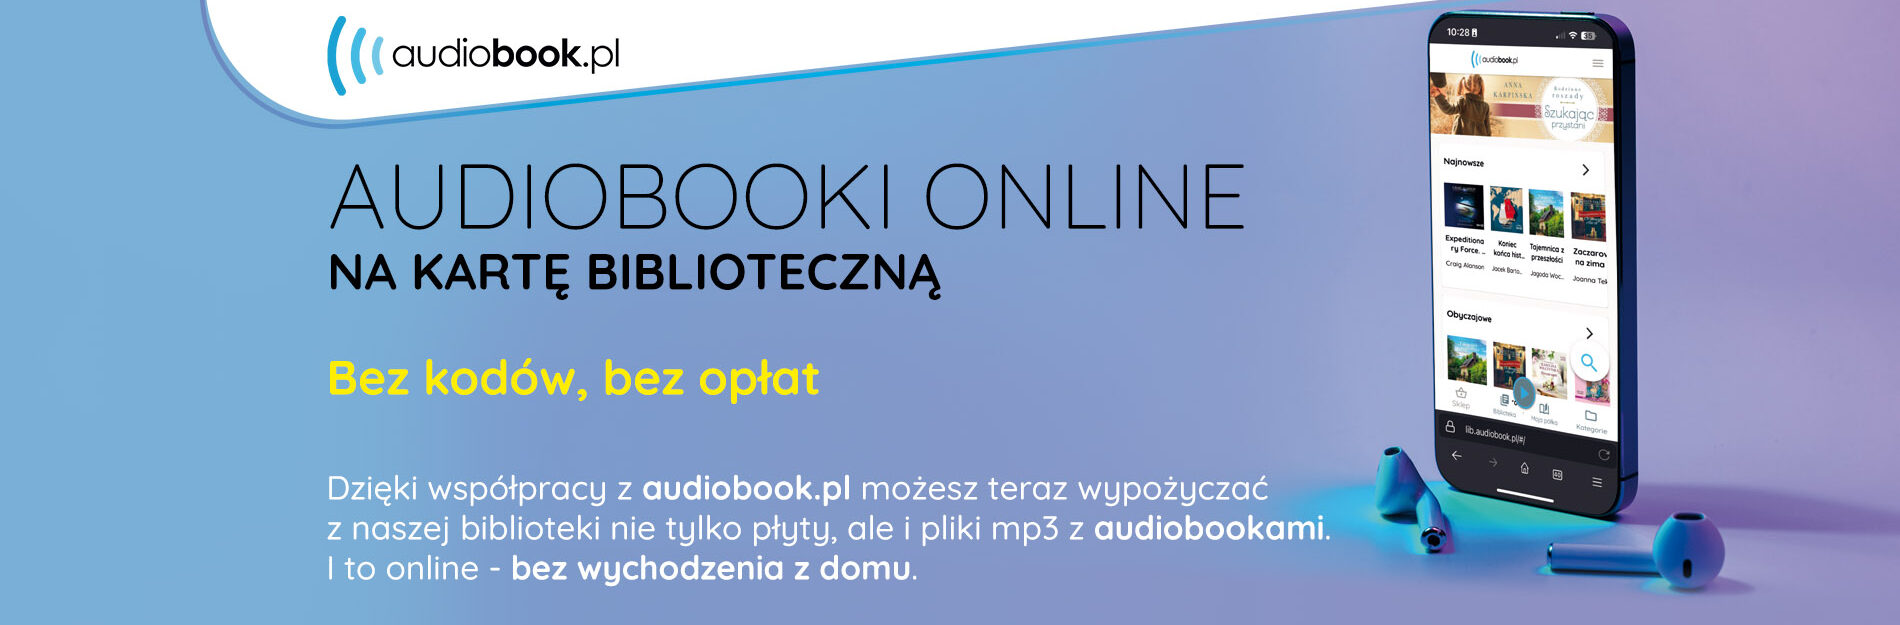 Audiobooki online na kartę biblioteczną - informacja o usłudze